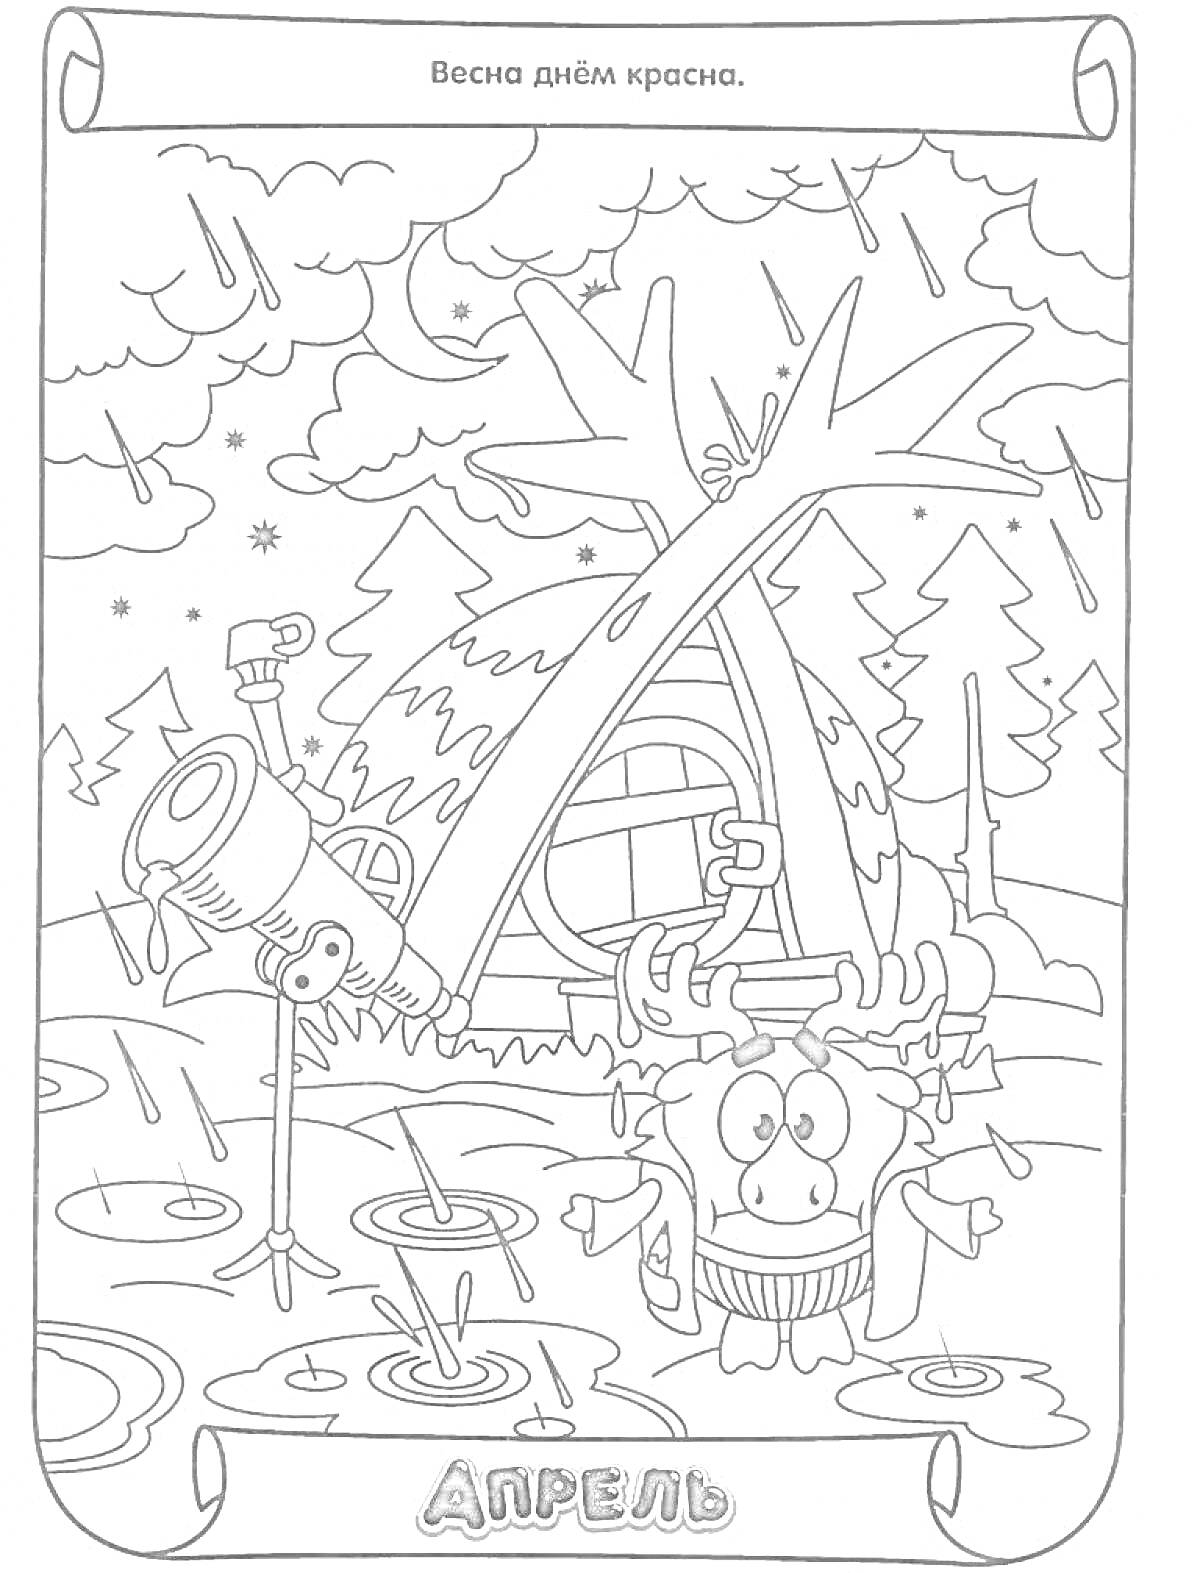 Апрельский дождь, телескоп, домик, лужи, лес, мультипликационный персонаж